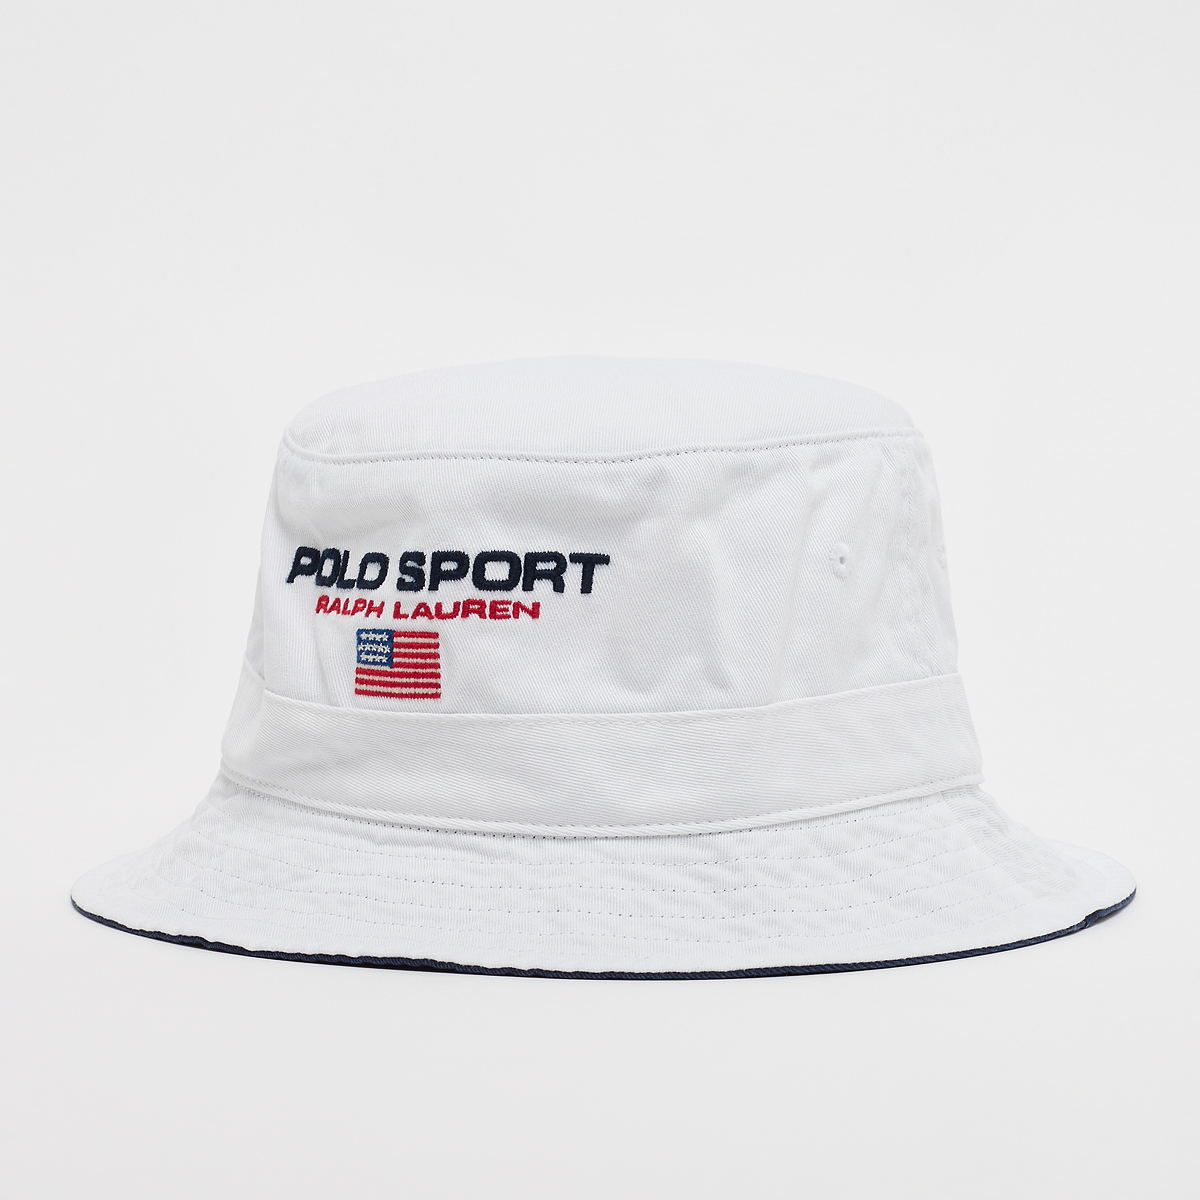 Loft Bucket-Hat, Polo Sport Ralph Lauren, Accessoires, white, taille: S/M